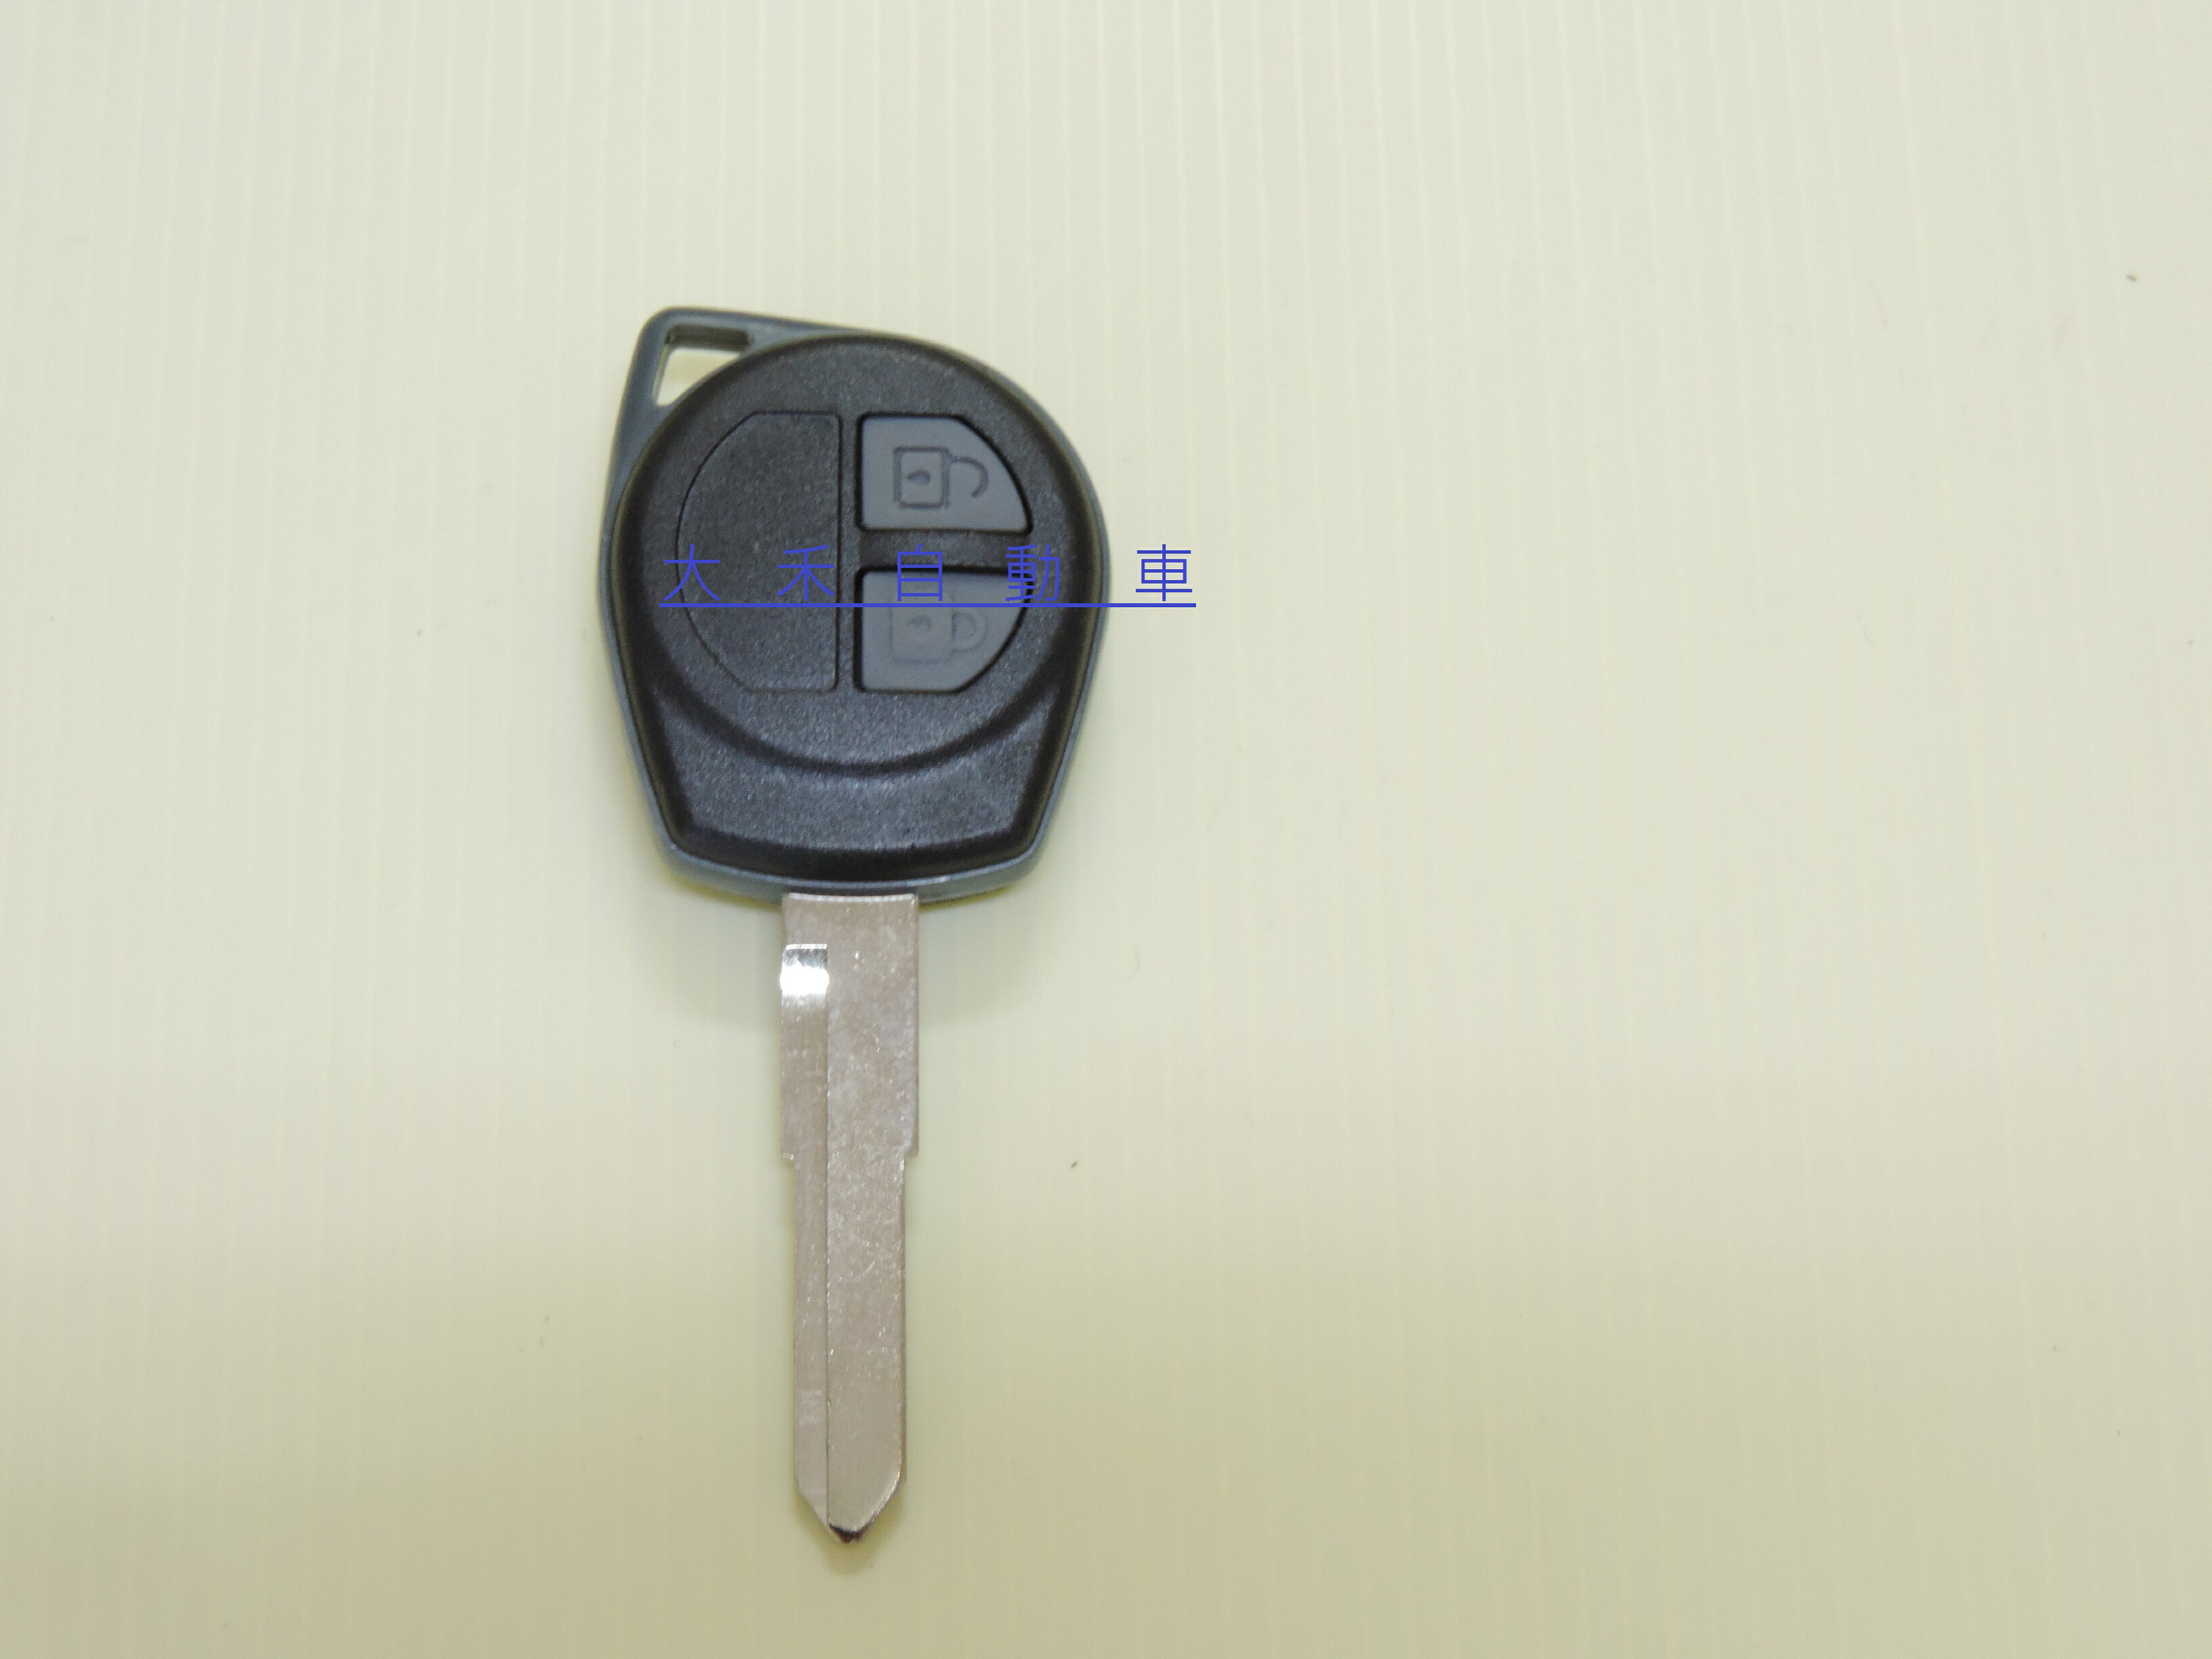 大禾自動車 SUZUKI 鈴木外殼更換 SWIFT SX4 GRAND VITARA 鑰匙外殼斷裂自行更換 渙然一新